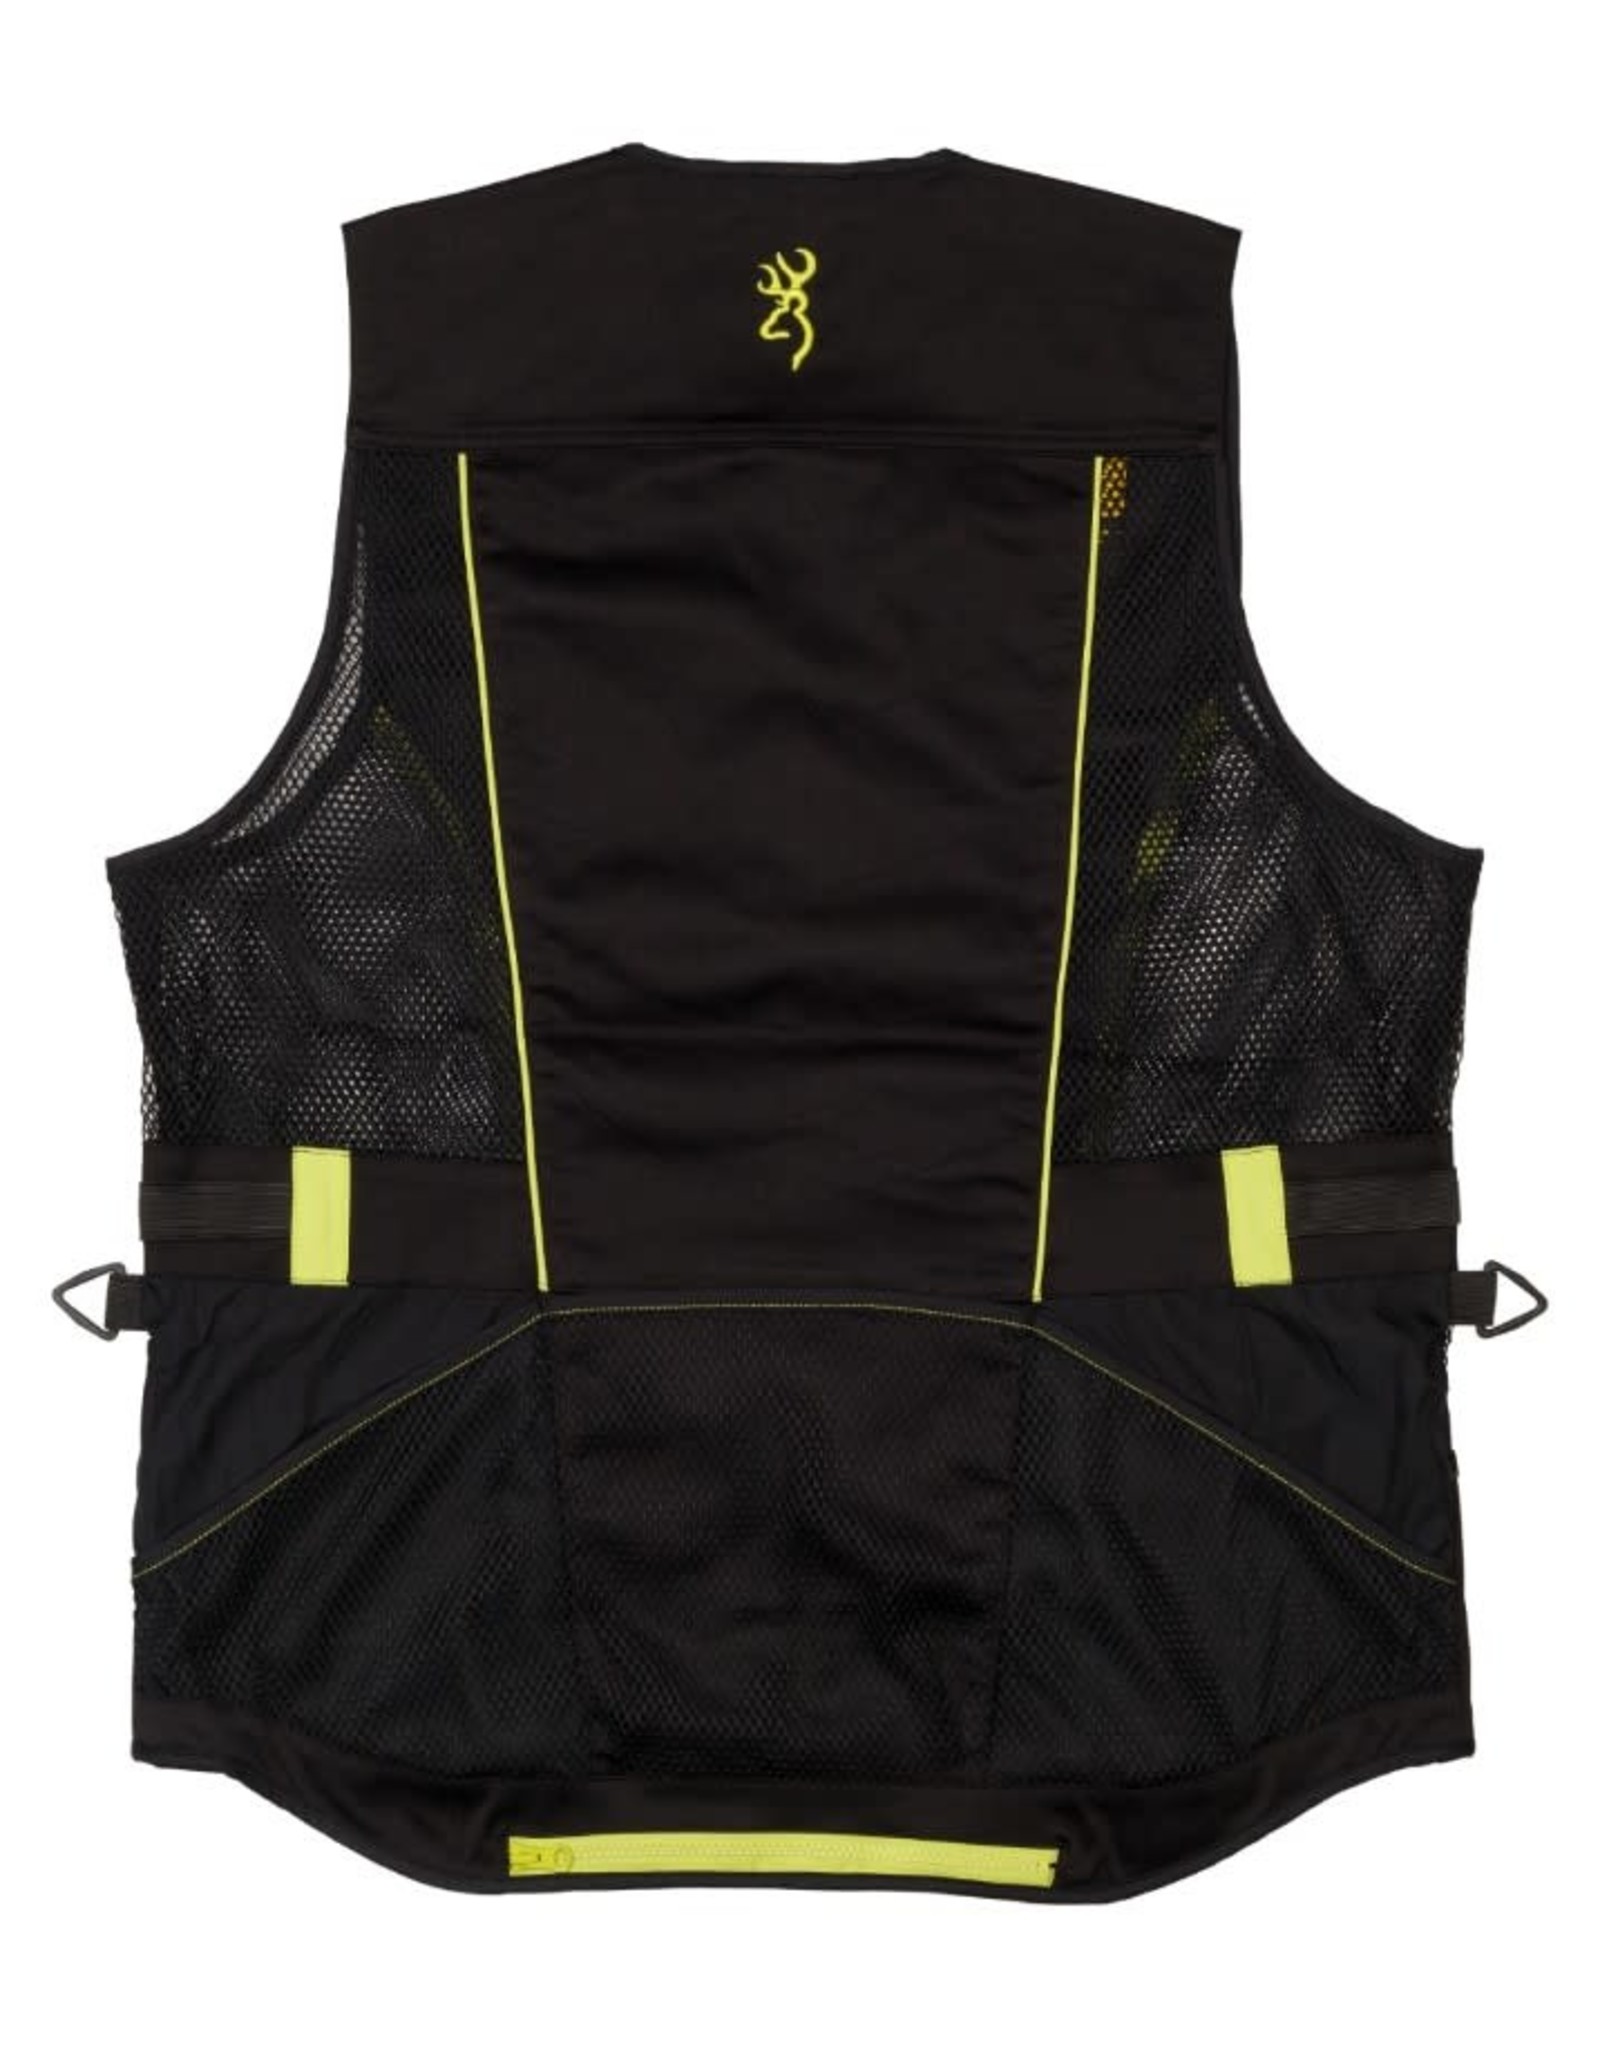 Browning Ace Vest - Black & Volt - XL